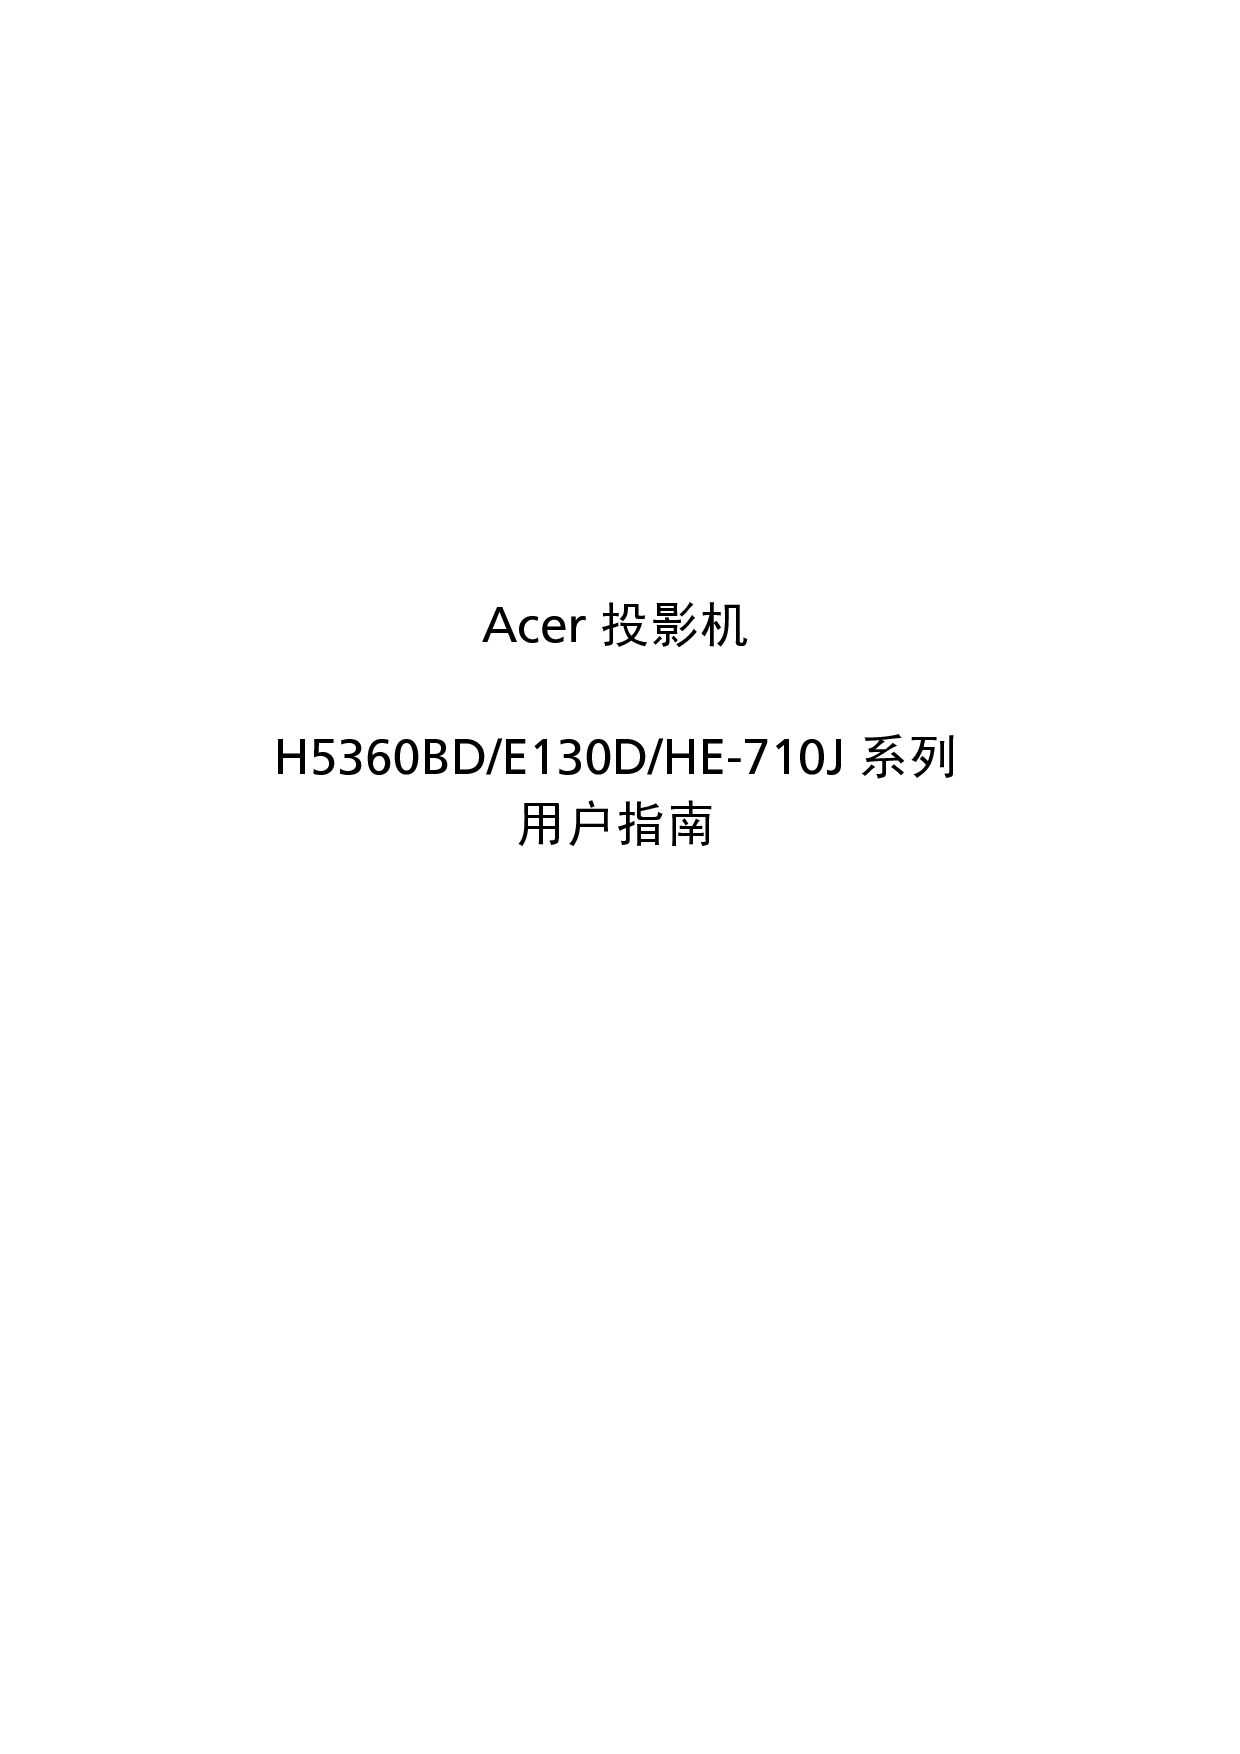 宏碁 Acer E130D, H5360BD, HE-710J 用户指南 封面